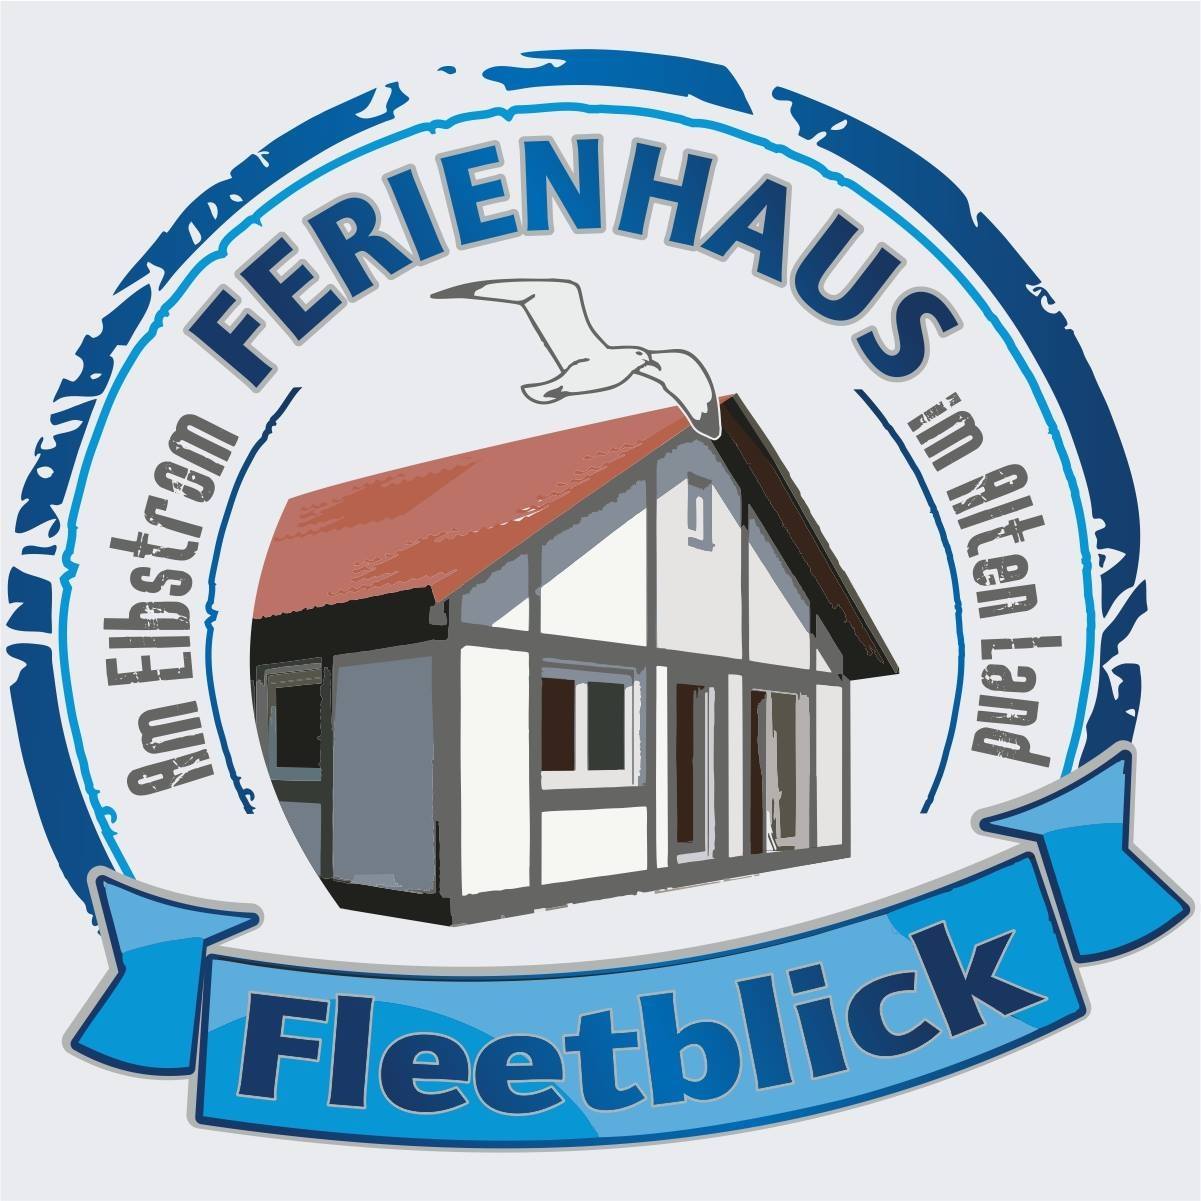 Ferienhaus Fleetblick in Hollern-Twielenfleth